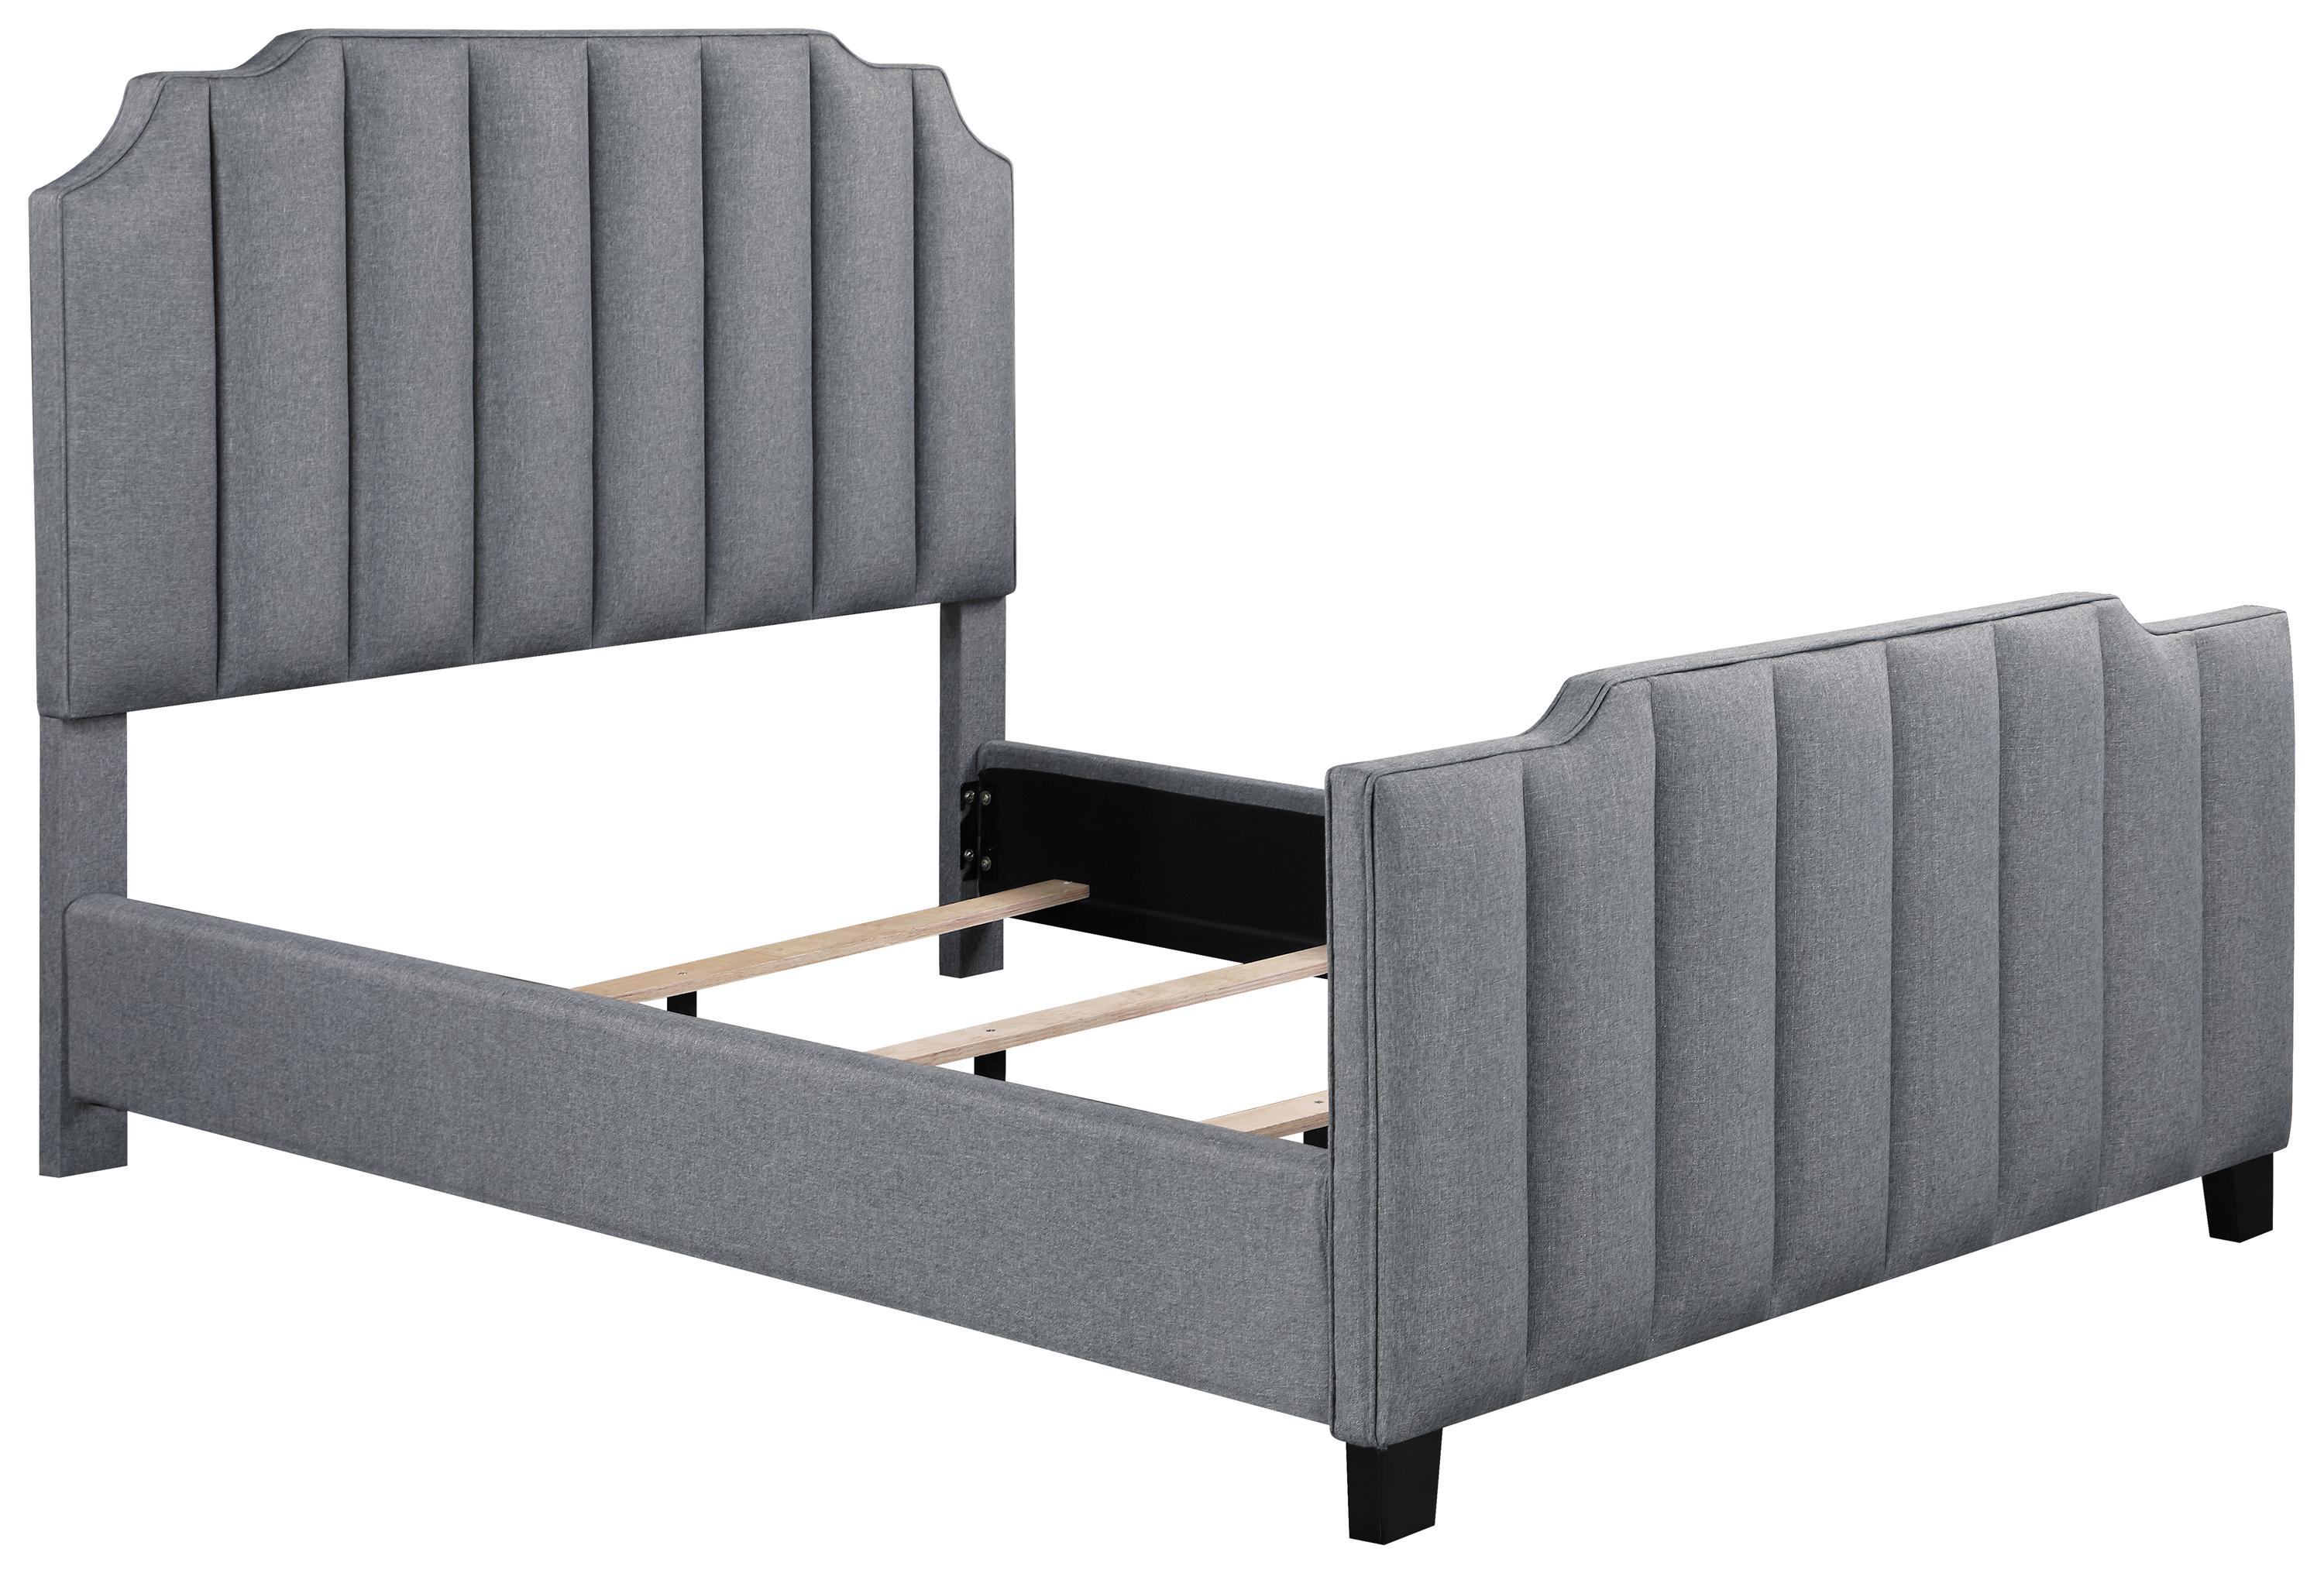 

    
Contemporary Light Gray Fabric Upholstery King Bed Coaster 306029KE Fiona
